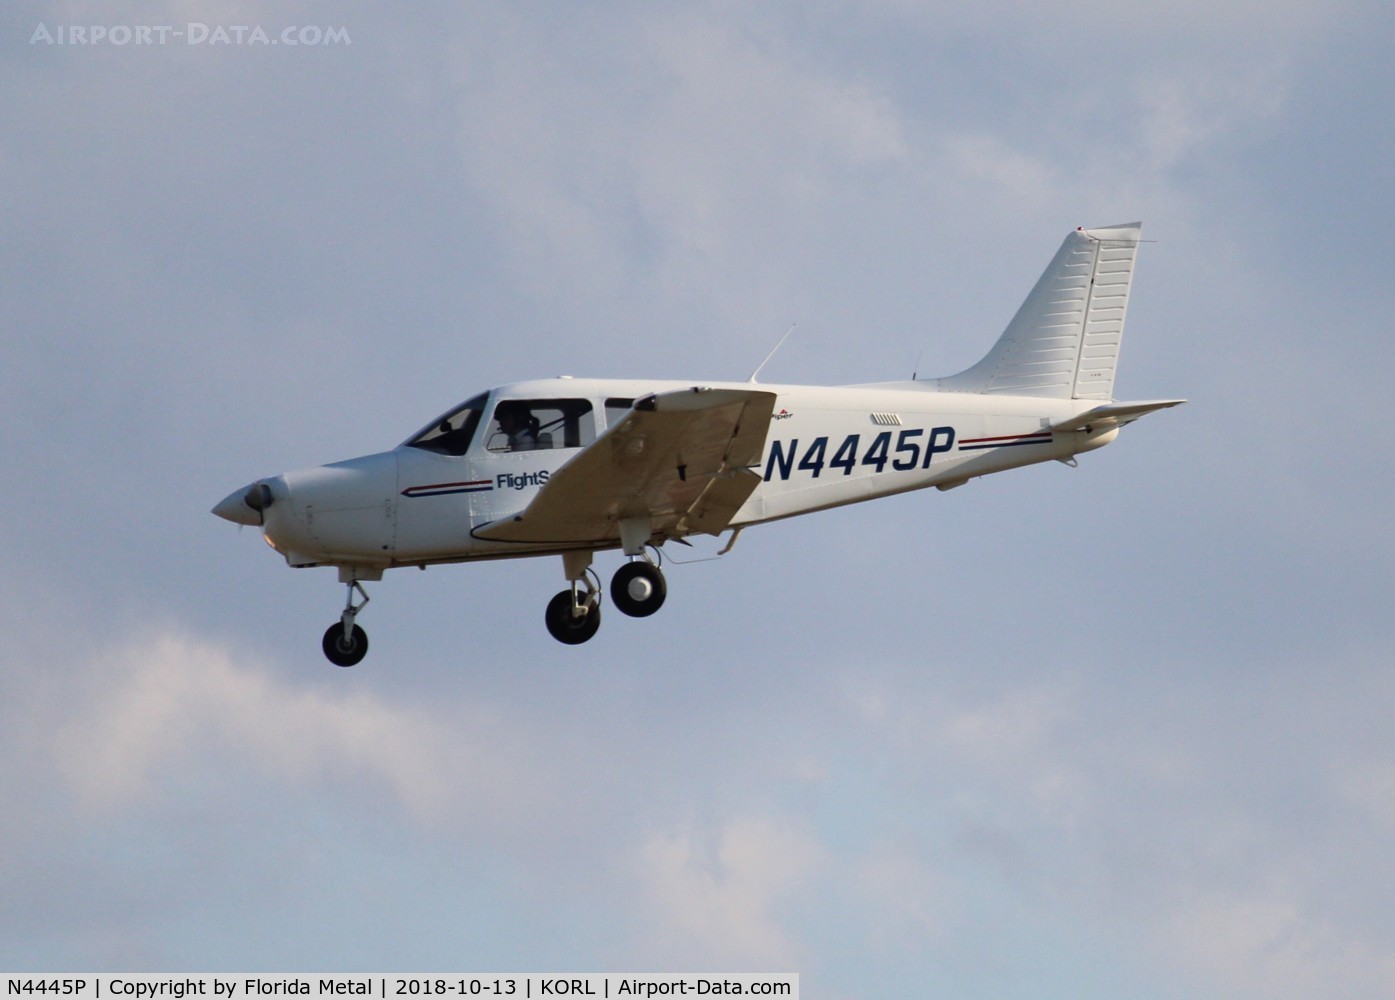 N4445P, 2015 Piper PA-28-161 C/N 28-42400, PA-28-181